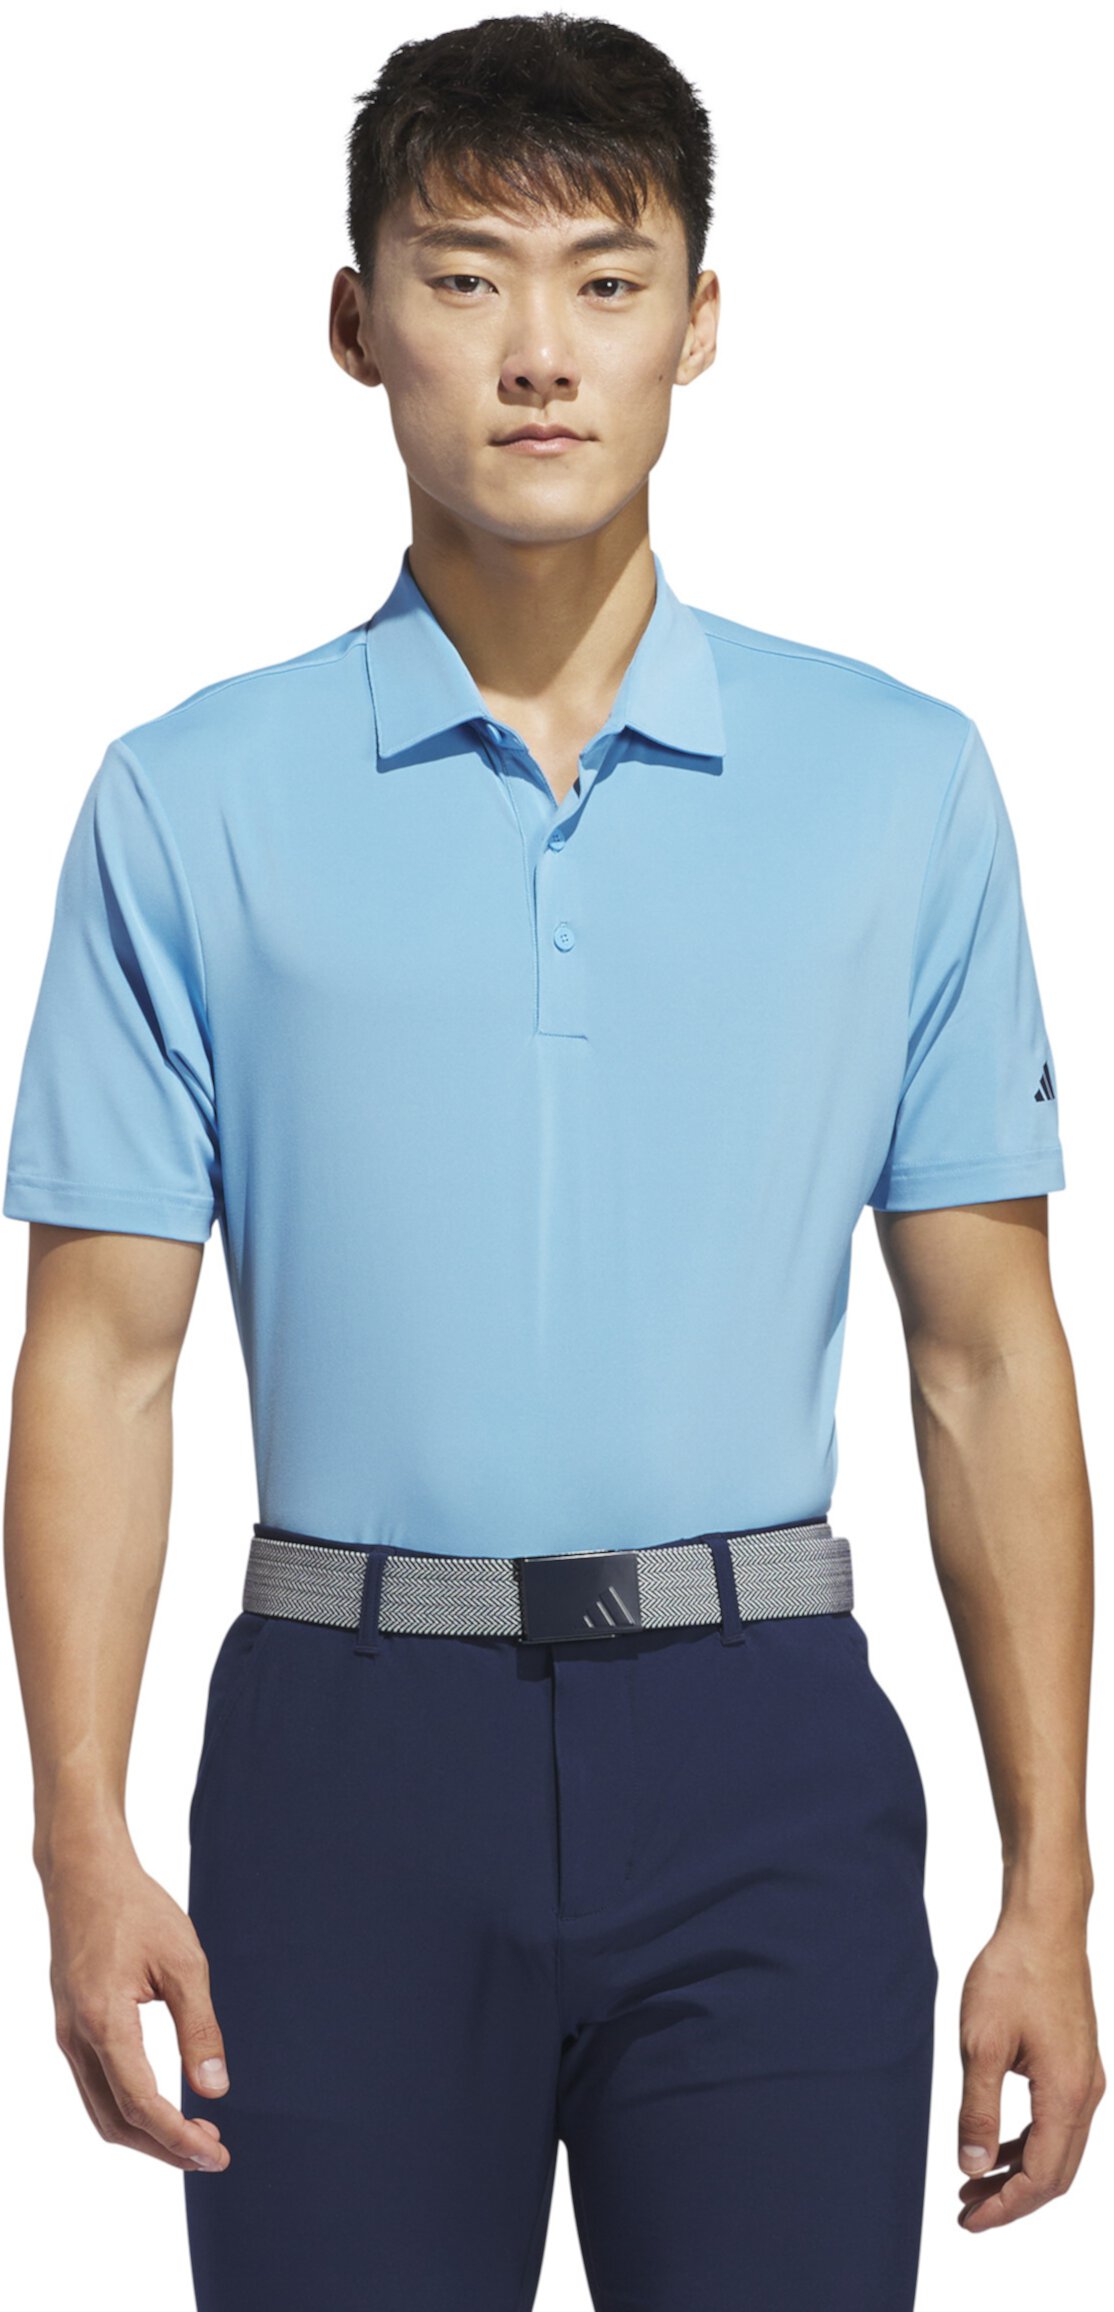 Однотонная рубашка-поло с короткими рукавами Ultimate365 Adidas